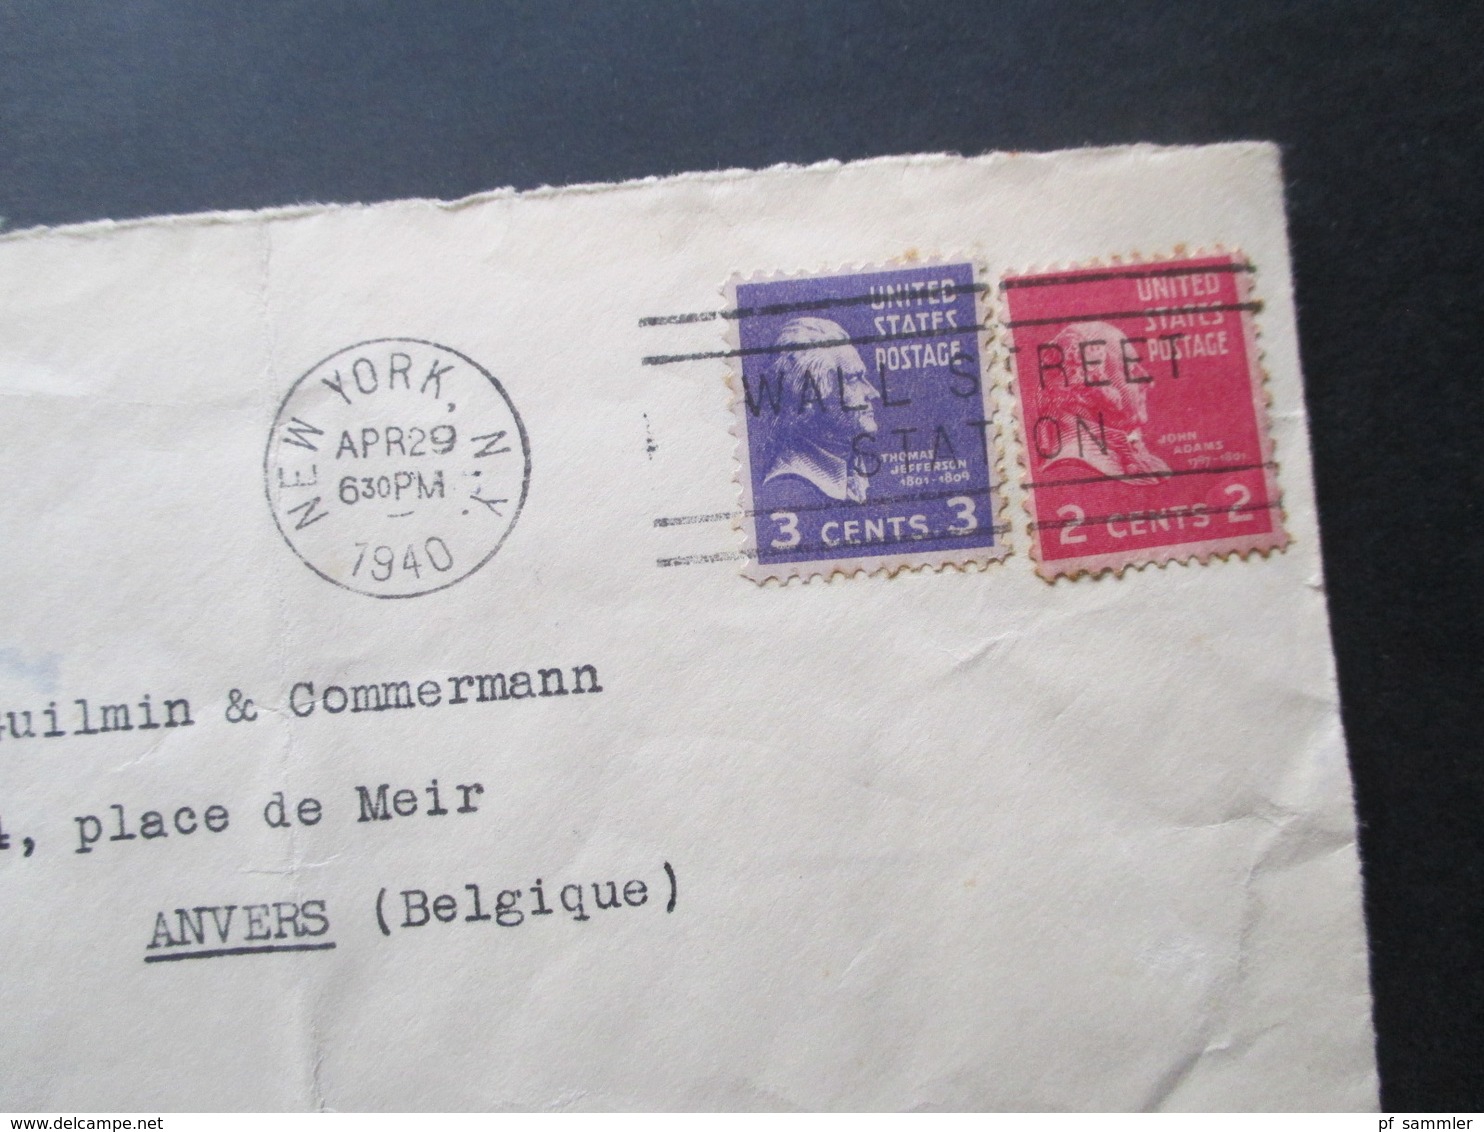 USA 1940 Zensurbeleg New York - Anvers Belgien Opened By Examiner 5094 Und OKW Zensur Streifen Und Zensurstempel - Storia Postale